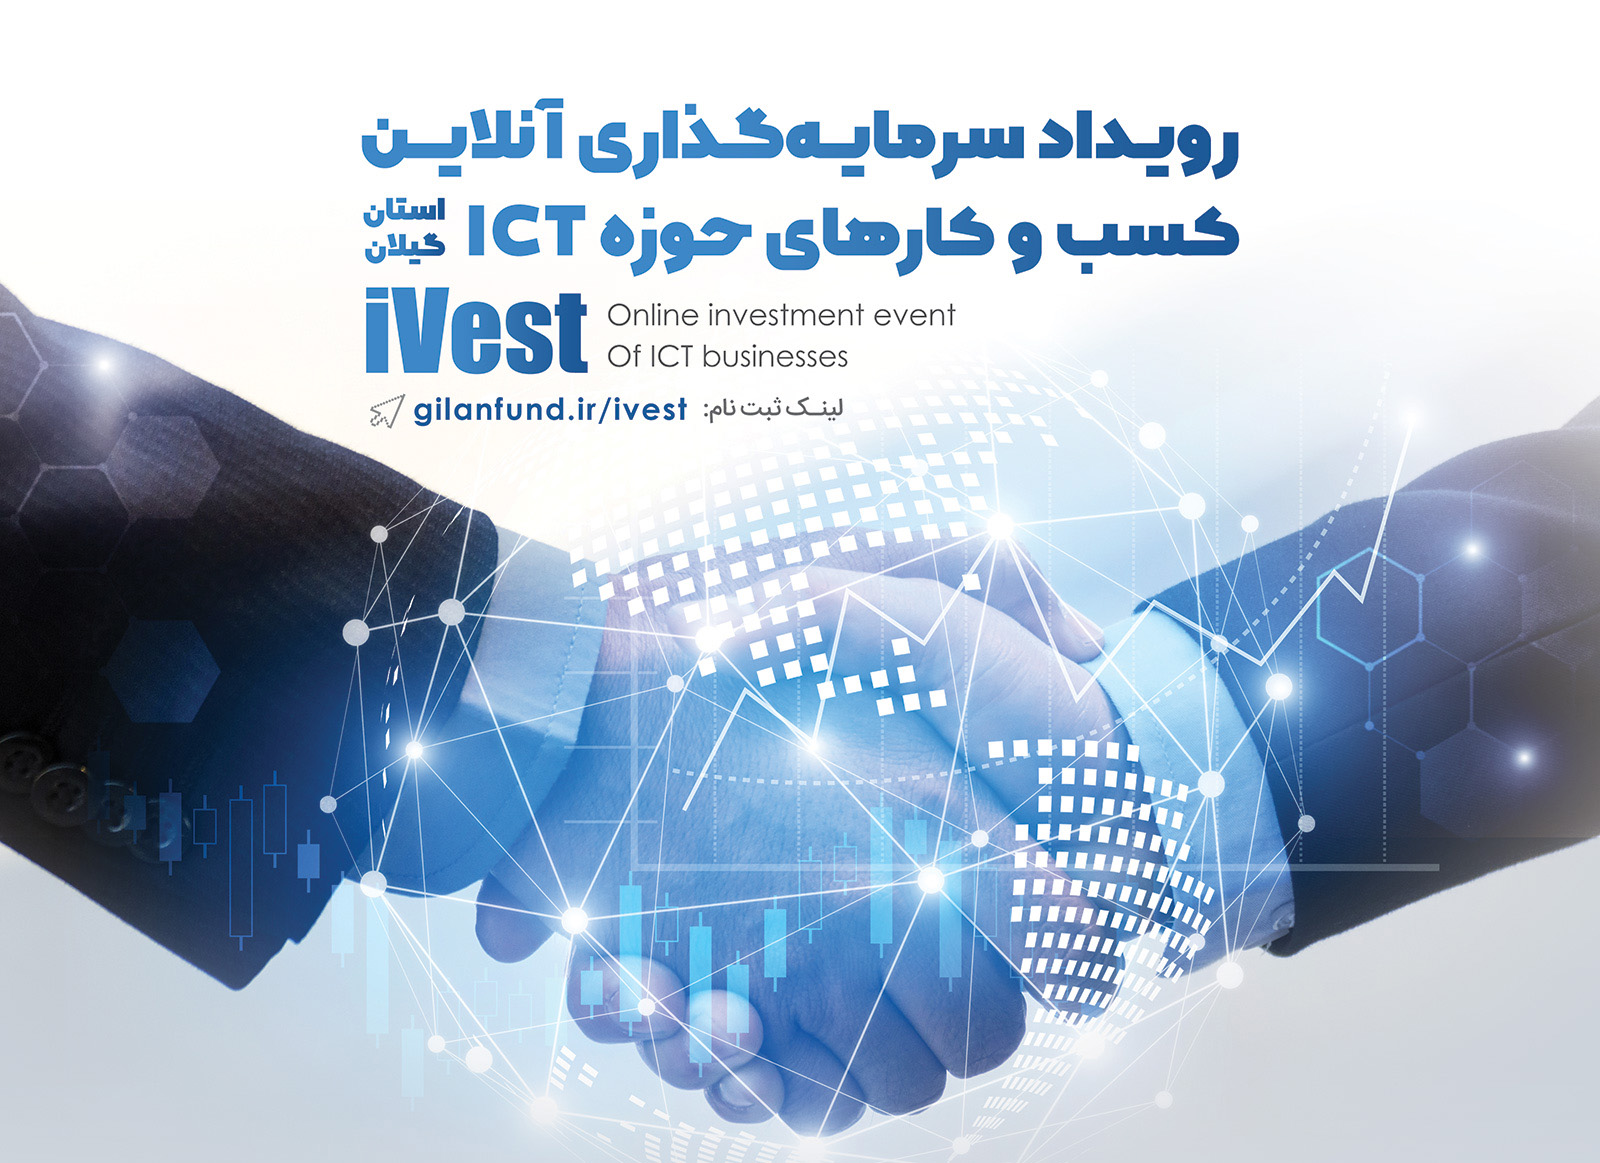 برگزاری اولین رویداد سرمایه گذاری آنلاین در گیلان/ iVest فرصتی برای سرمایه گذاری